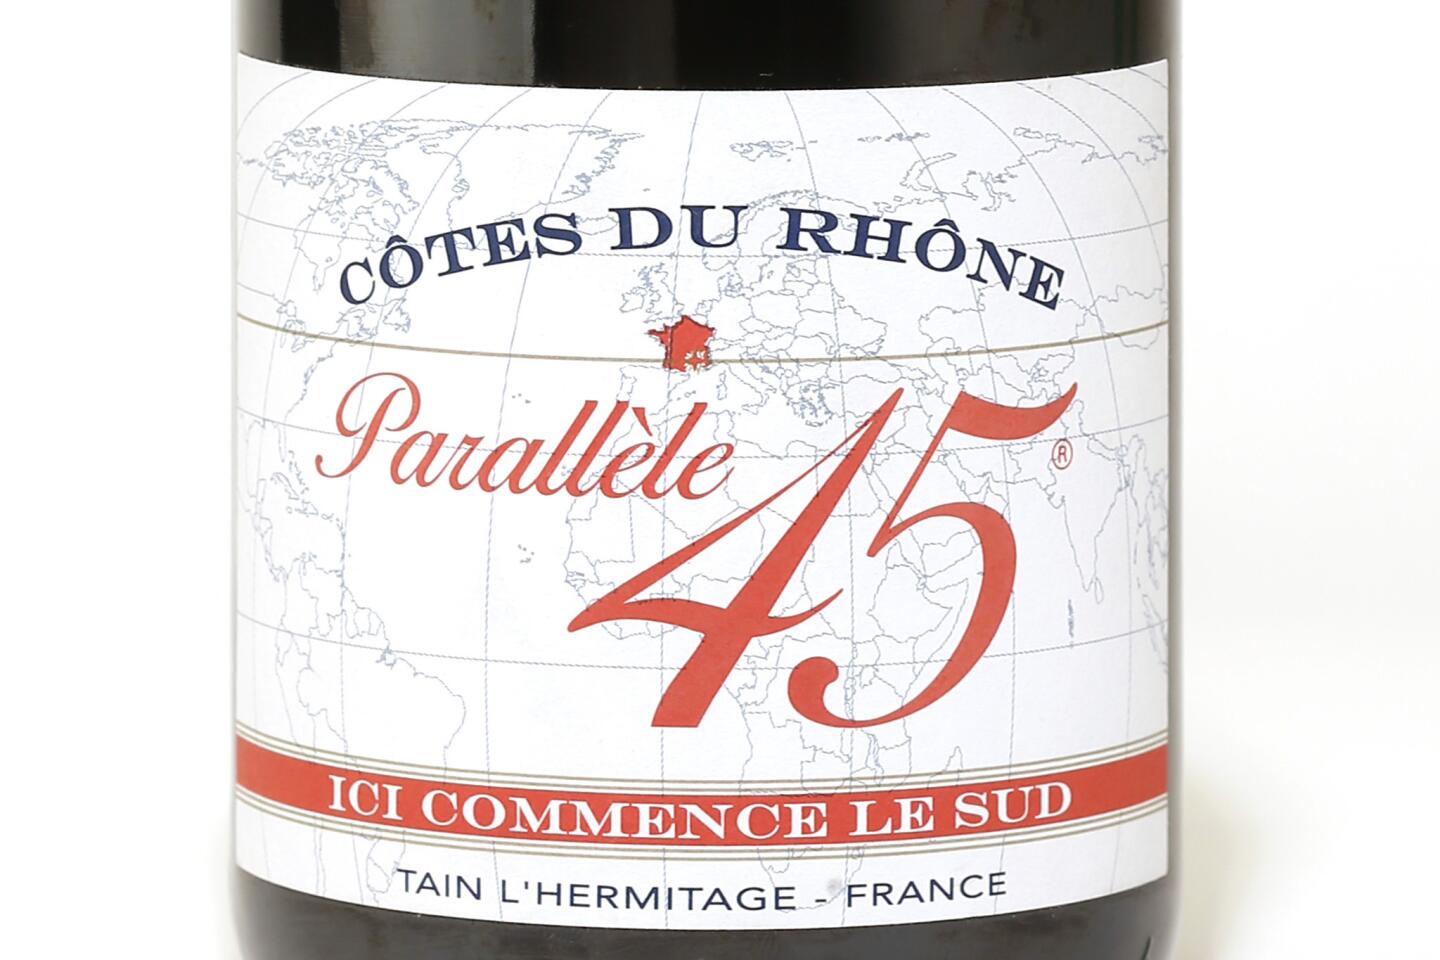 2010 Jaboulet Cotes du Rhone Parallele 45 Rouge